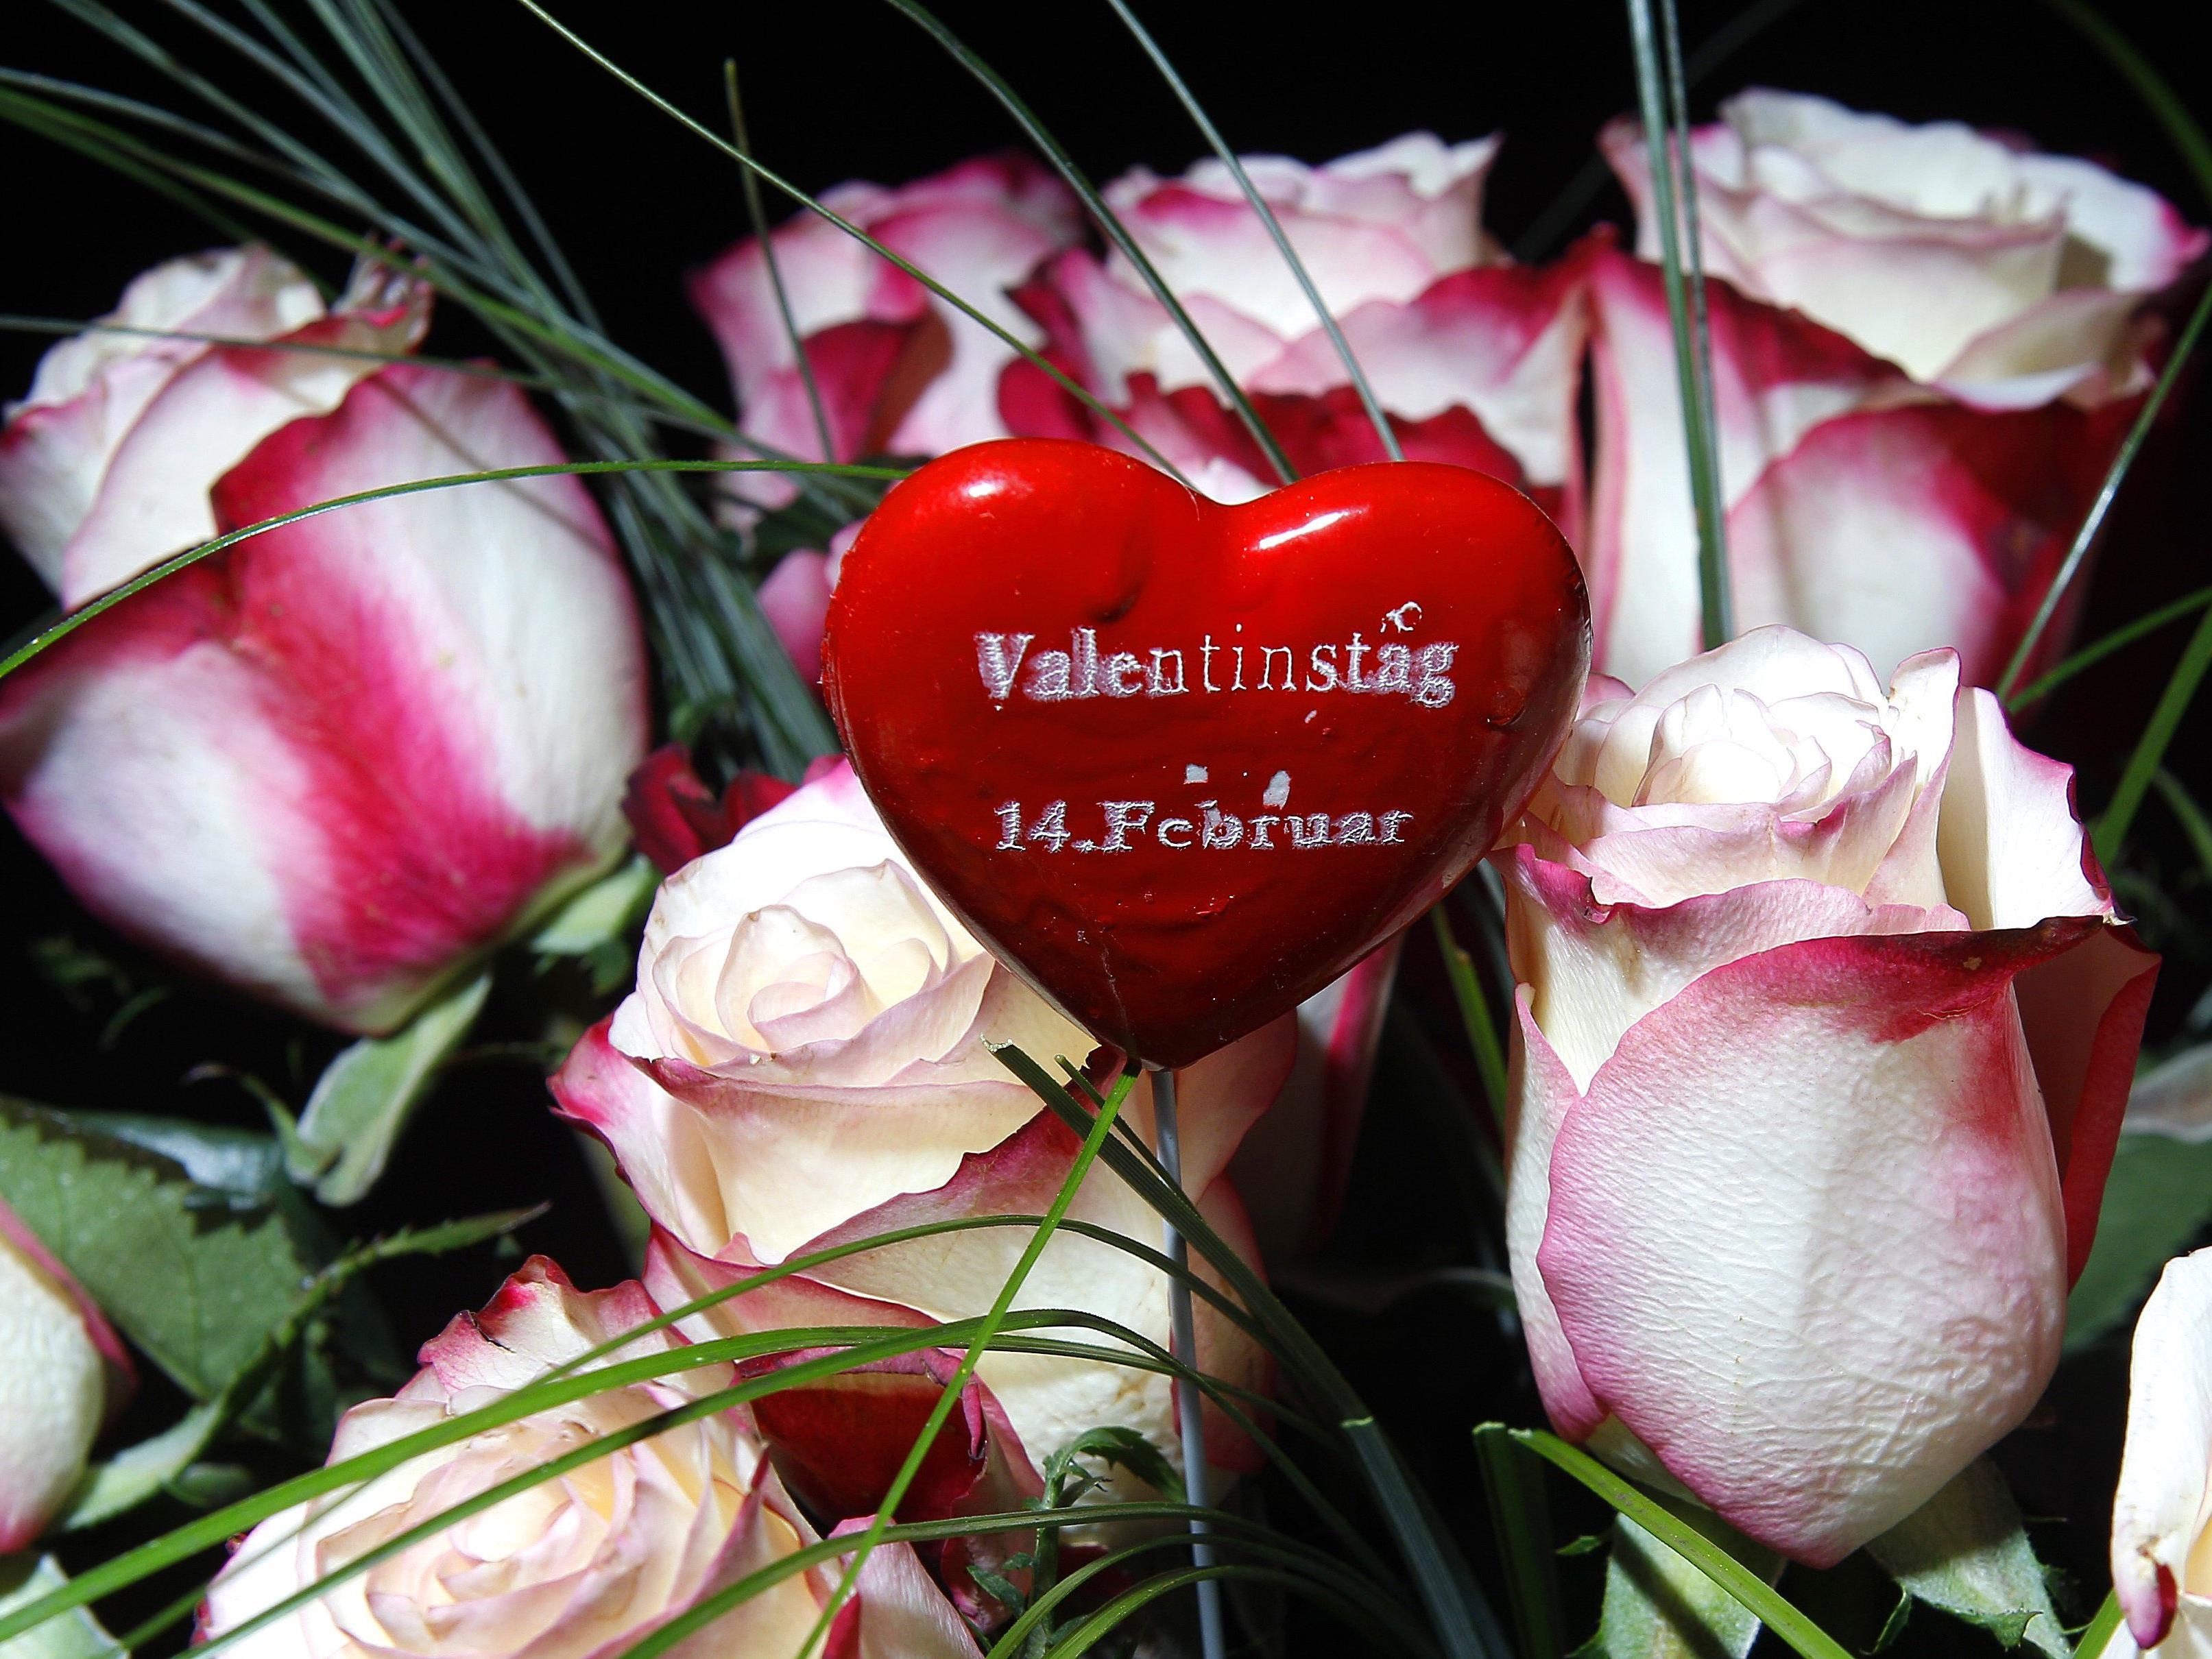 Am 14. Februar wird Valentinstag gefeiert. Wir habn 15 romantische Filmtipps.